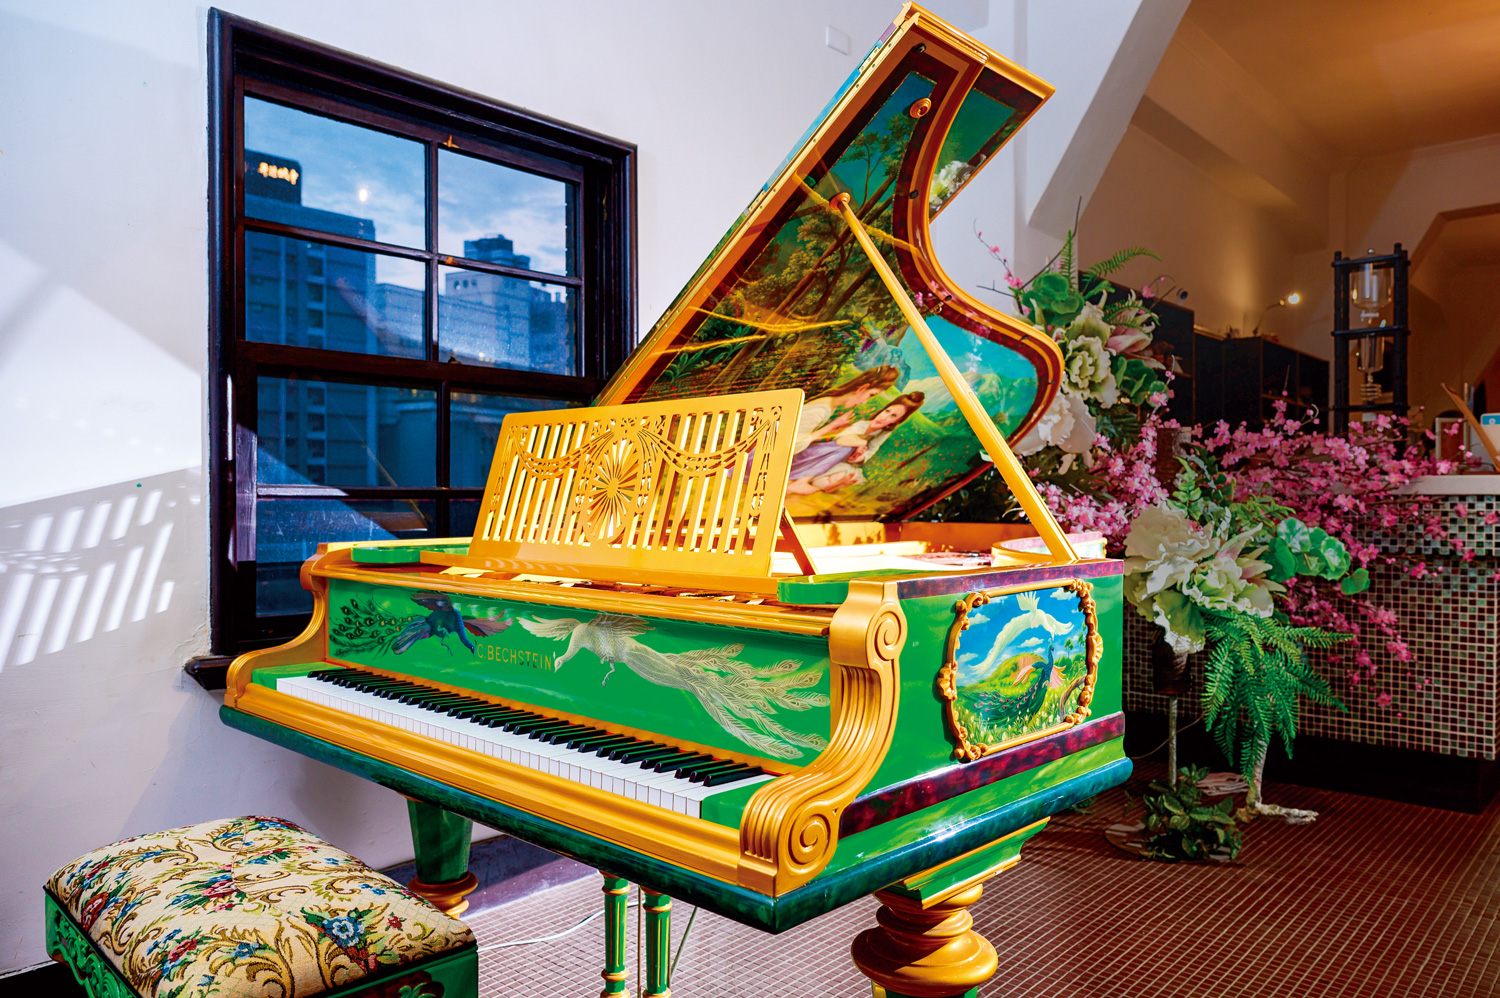 琴身漆塗成綠色如大理石質地的貝希斯坦鋼琴（C. Bechstein），是鋼琴家李斯特指定品牌。（攝影：李明宜）